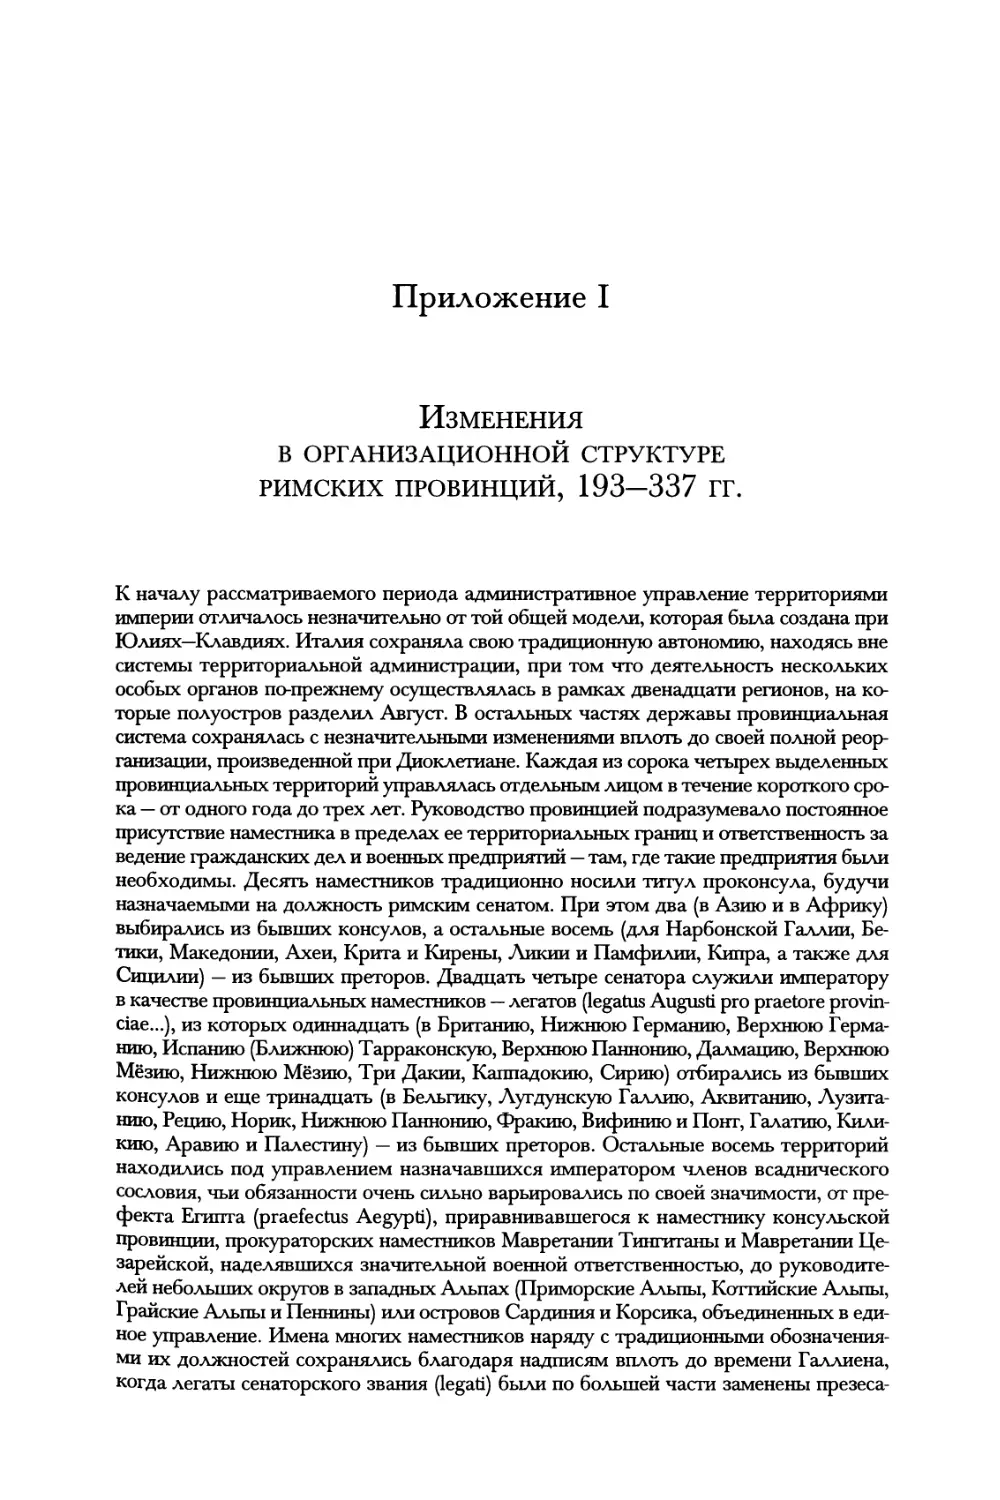 Приложение I. Изменения в организационной структуре римских провинций, 193—337 гг.